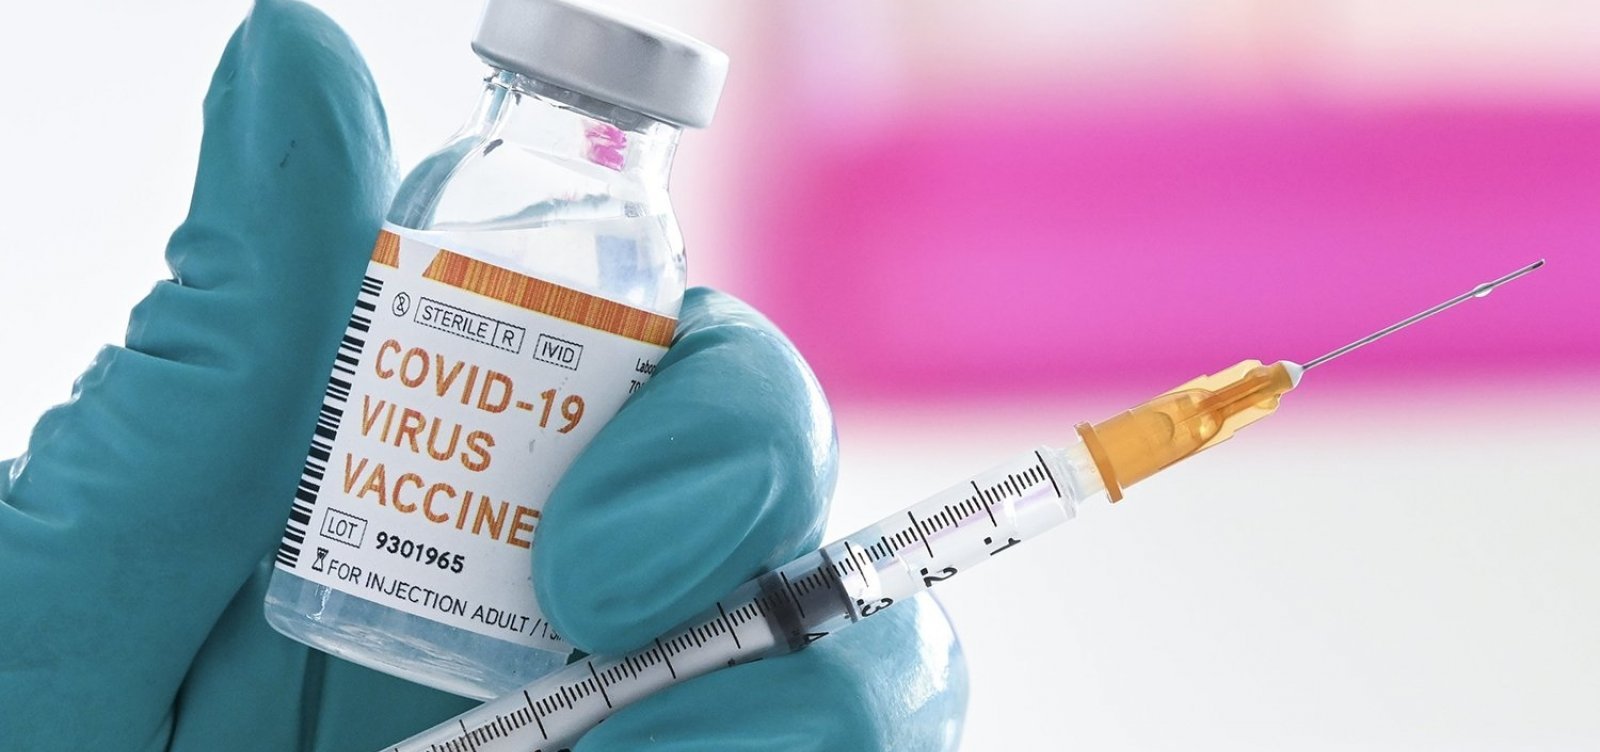 Estudo com a vacina de Oxford é suspenso no Reino Unido após 'efeito adverso grave' em paciente, diz site